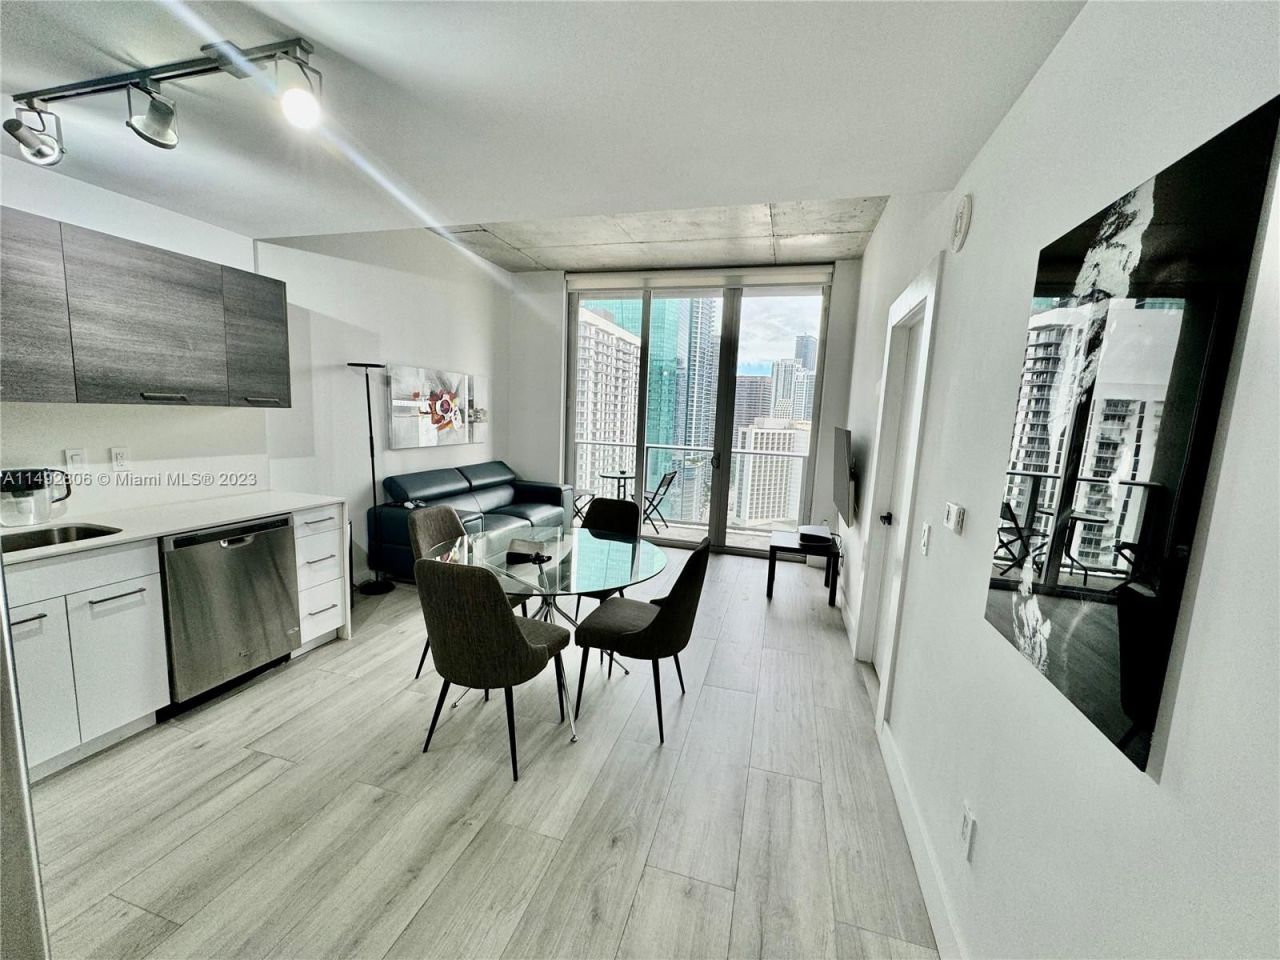 Appartement à Miami, États-Unis, 50 m2 - image 1